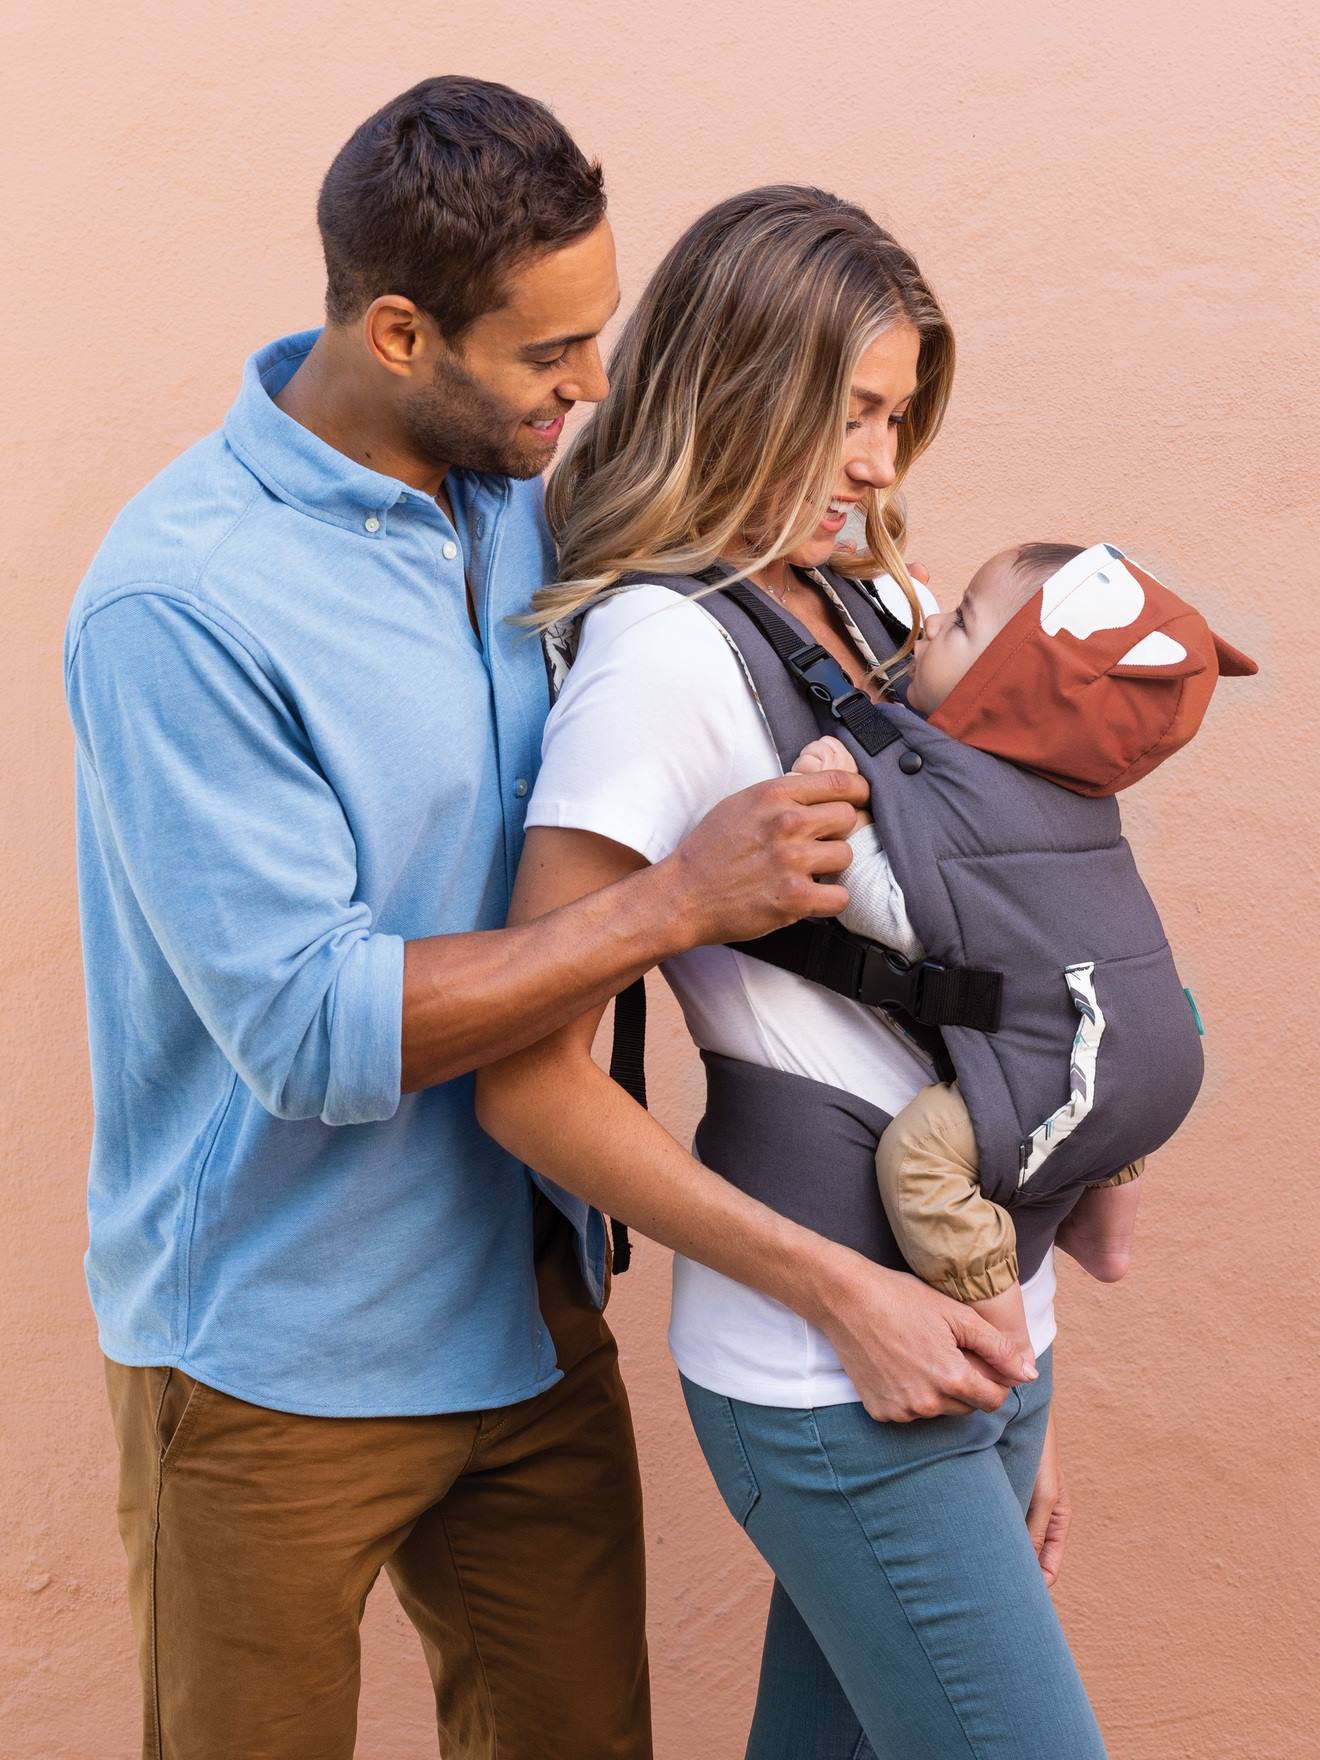 Infantino Hug and Cuddle - porte-bébé écharpe à enfiler